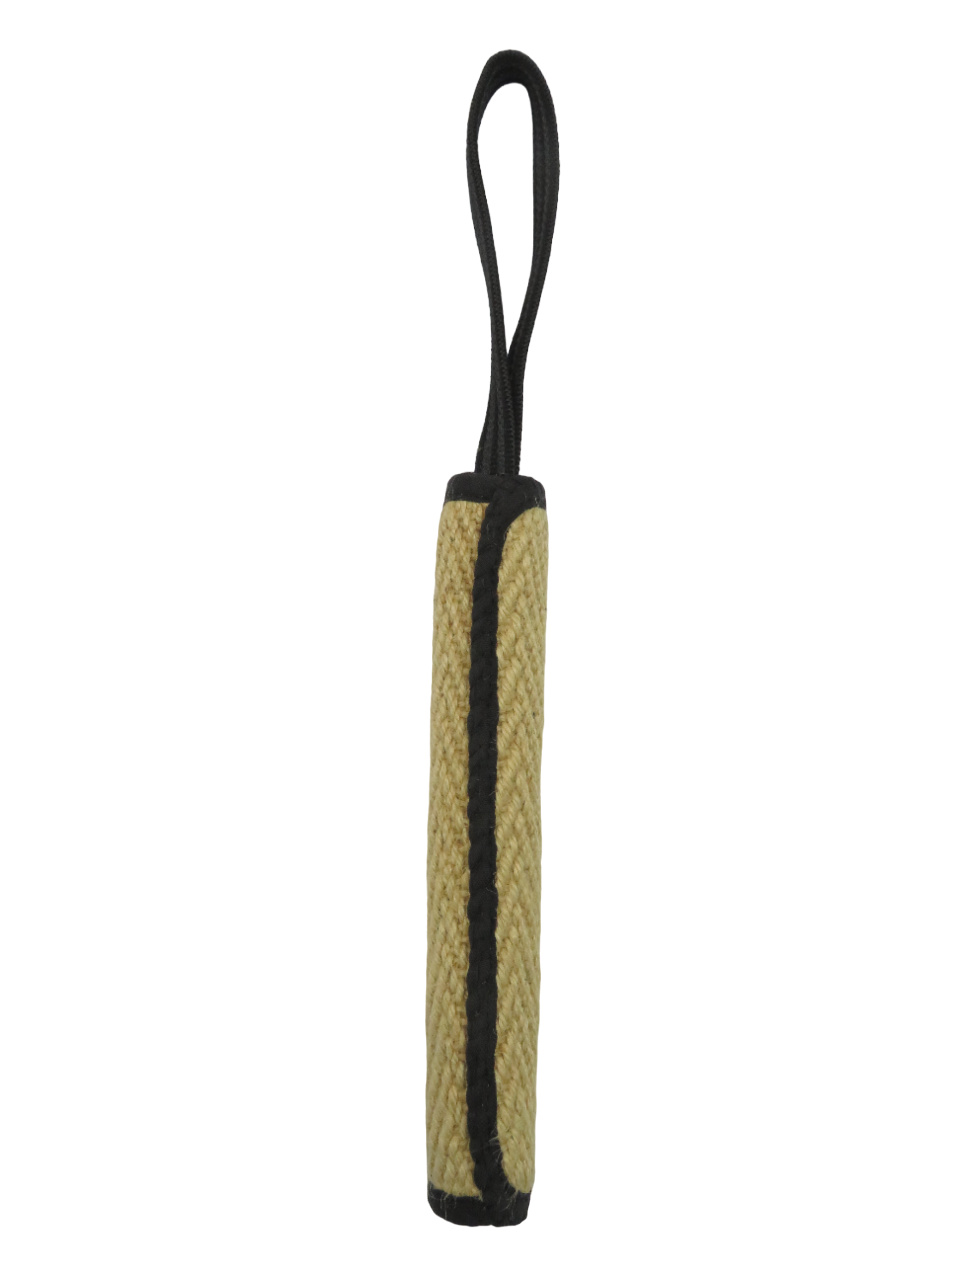 BOW WOW джутовая палка с 9-миллиметровой прорезиненной ручкой (натуральная) (120 г) BOW WOW джутовая палка с 9-миллиметровой прорезиненной ручкой (натуральная) (120 г) - фото 1